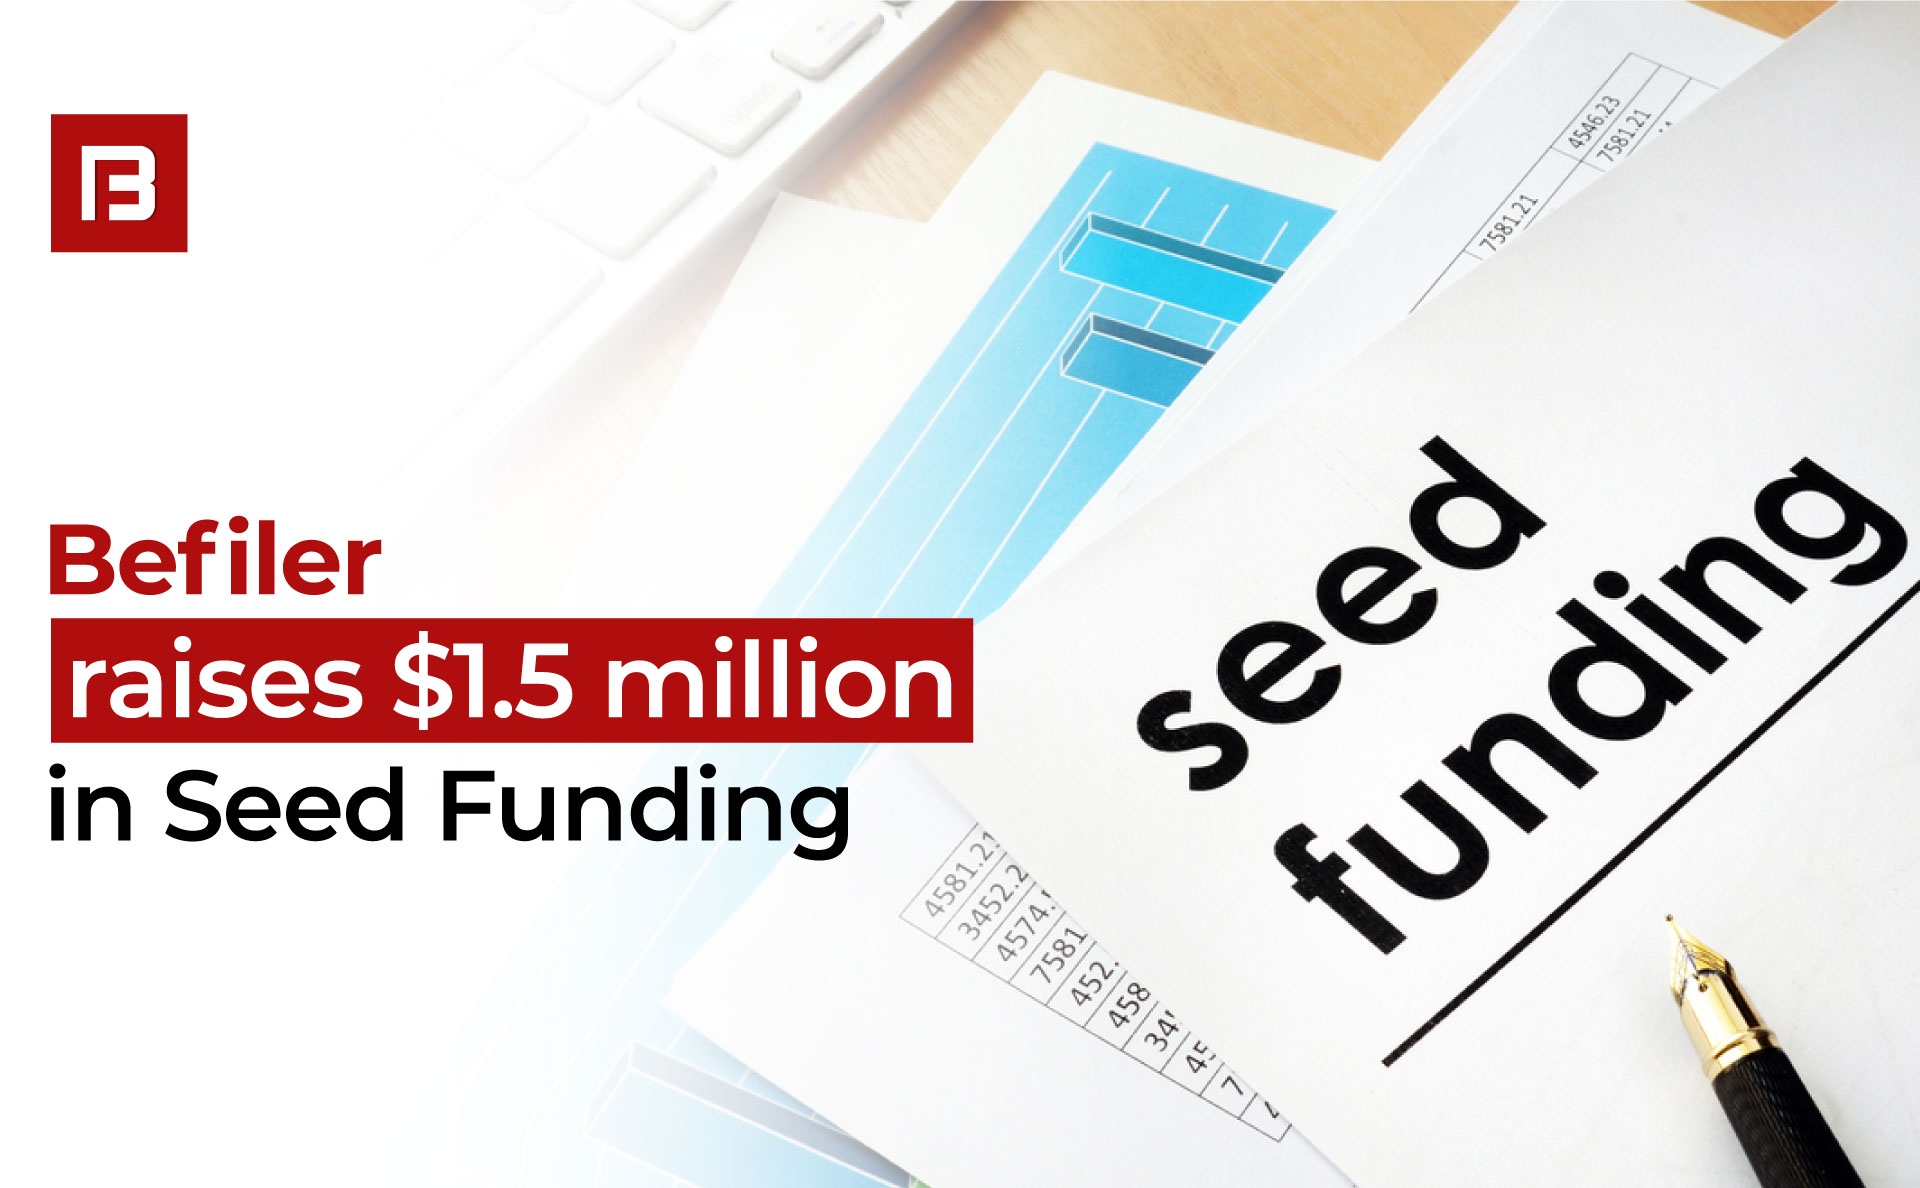 Befiler raises $1.5 million in Seed Funding